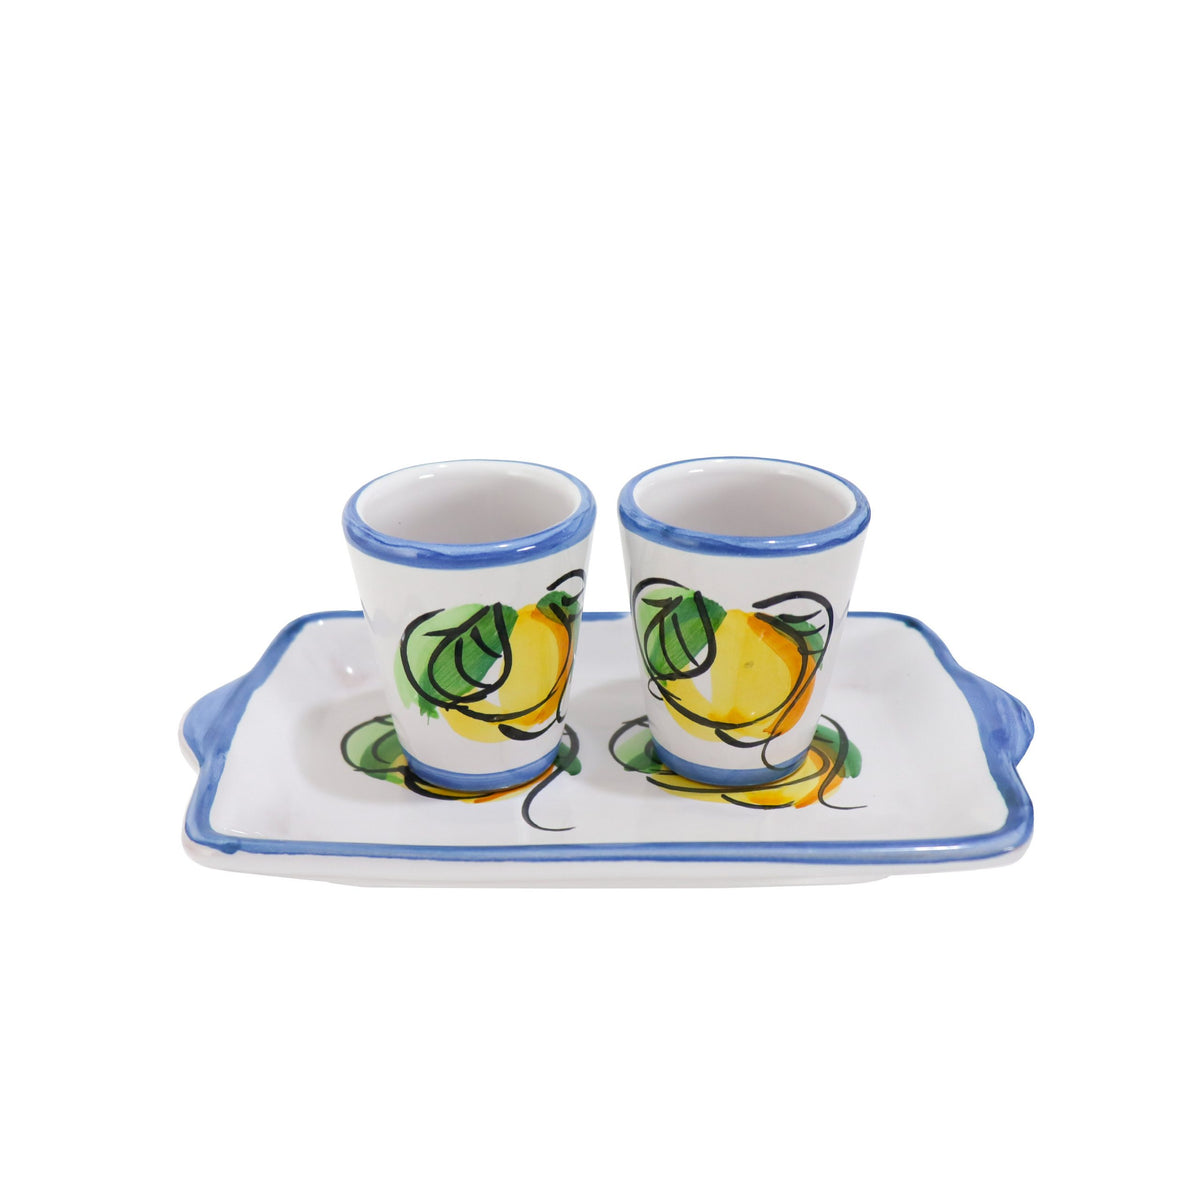 set of 6 limoncello glasses Costiera blu in Vietri ceramic.